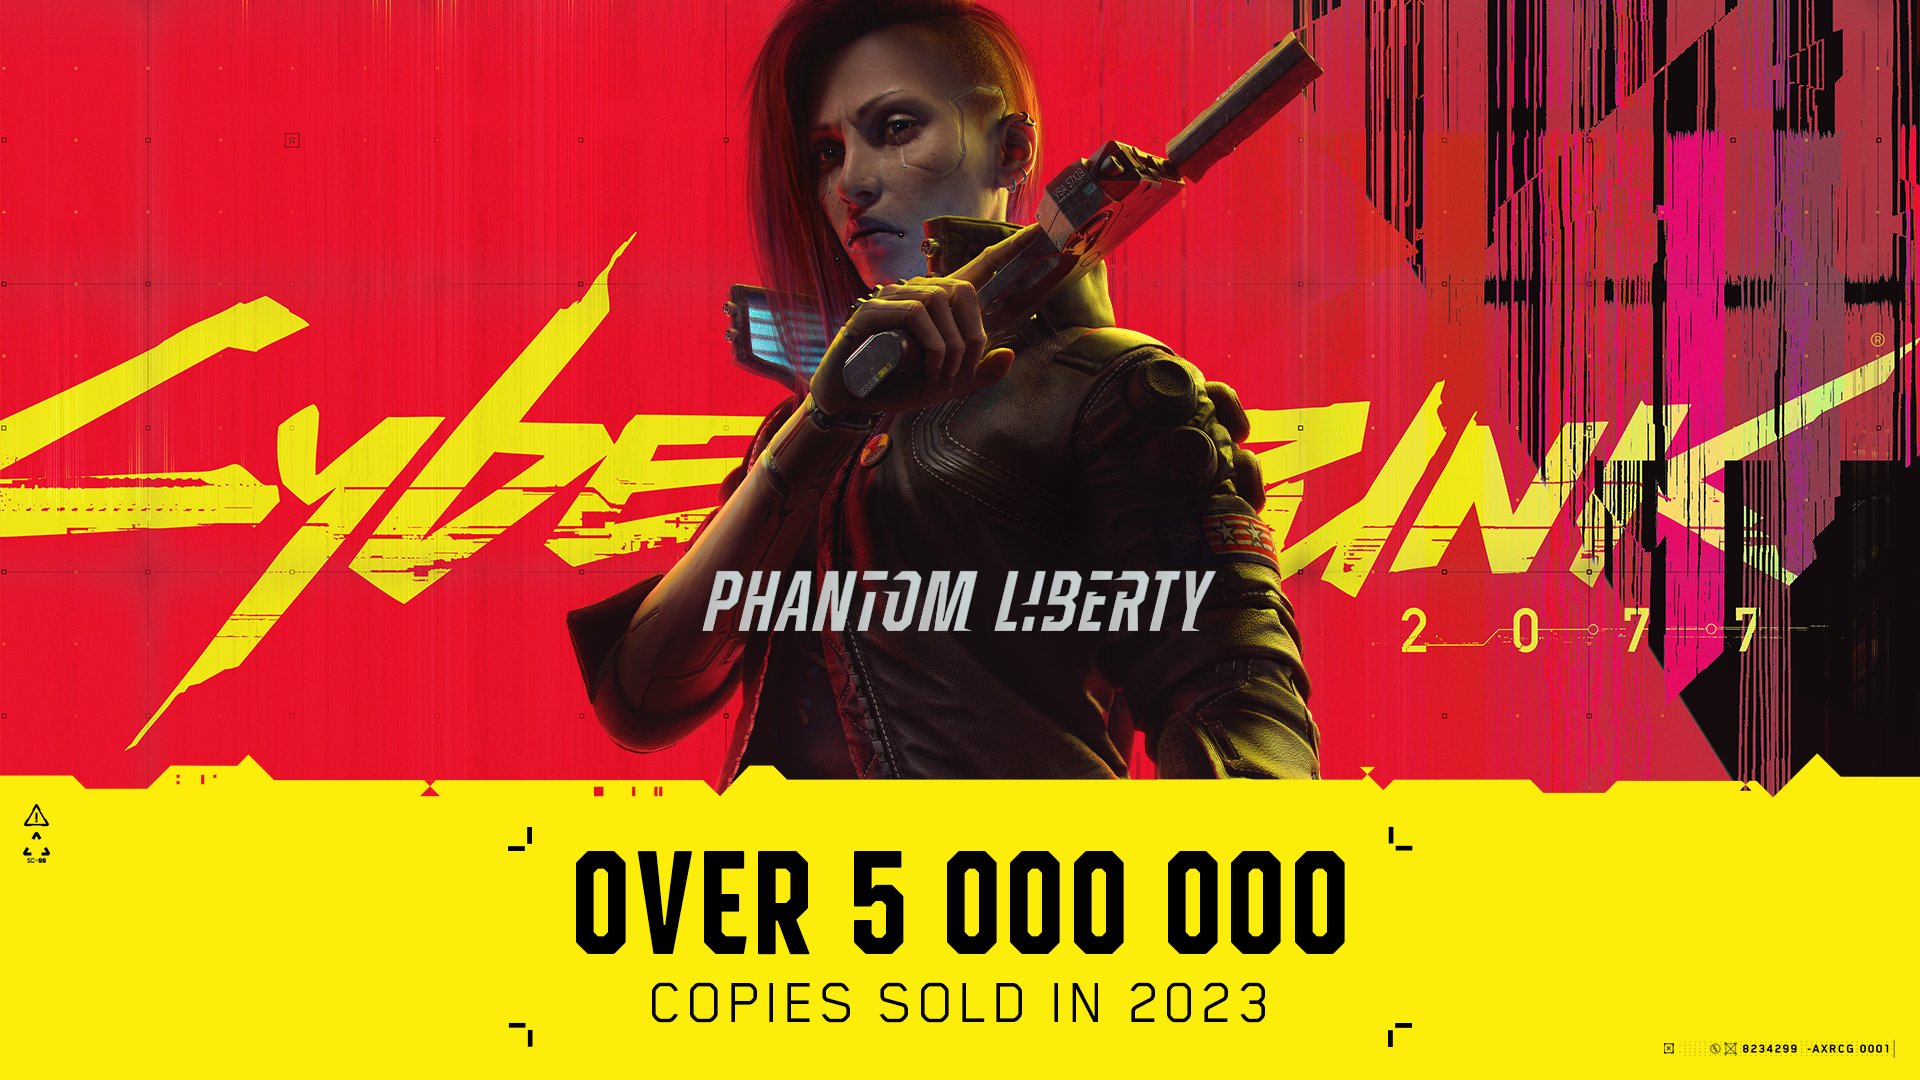 Cyberpunk 2077 Phantom Liberty - Mais de 5 milhões de cópias vendidas